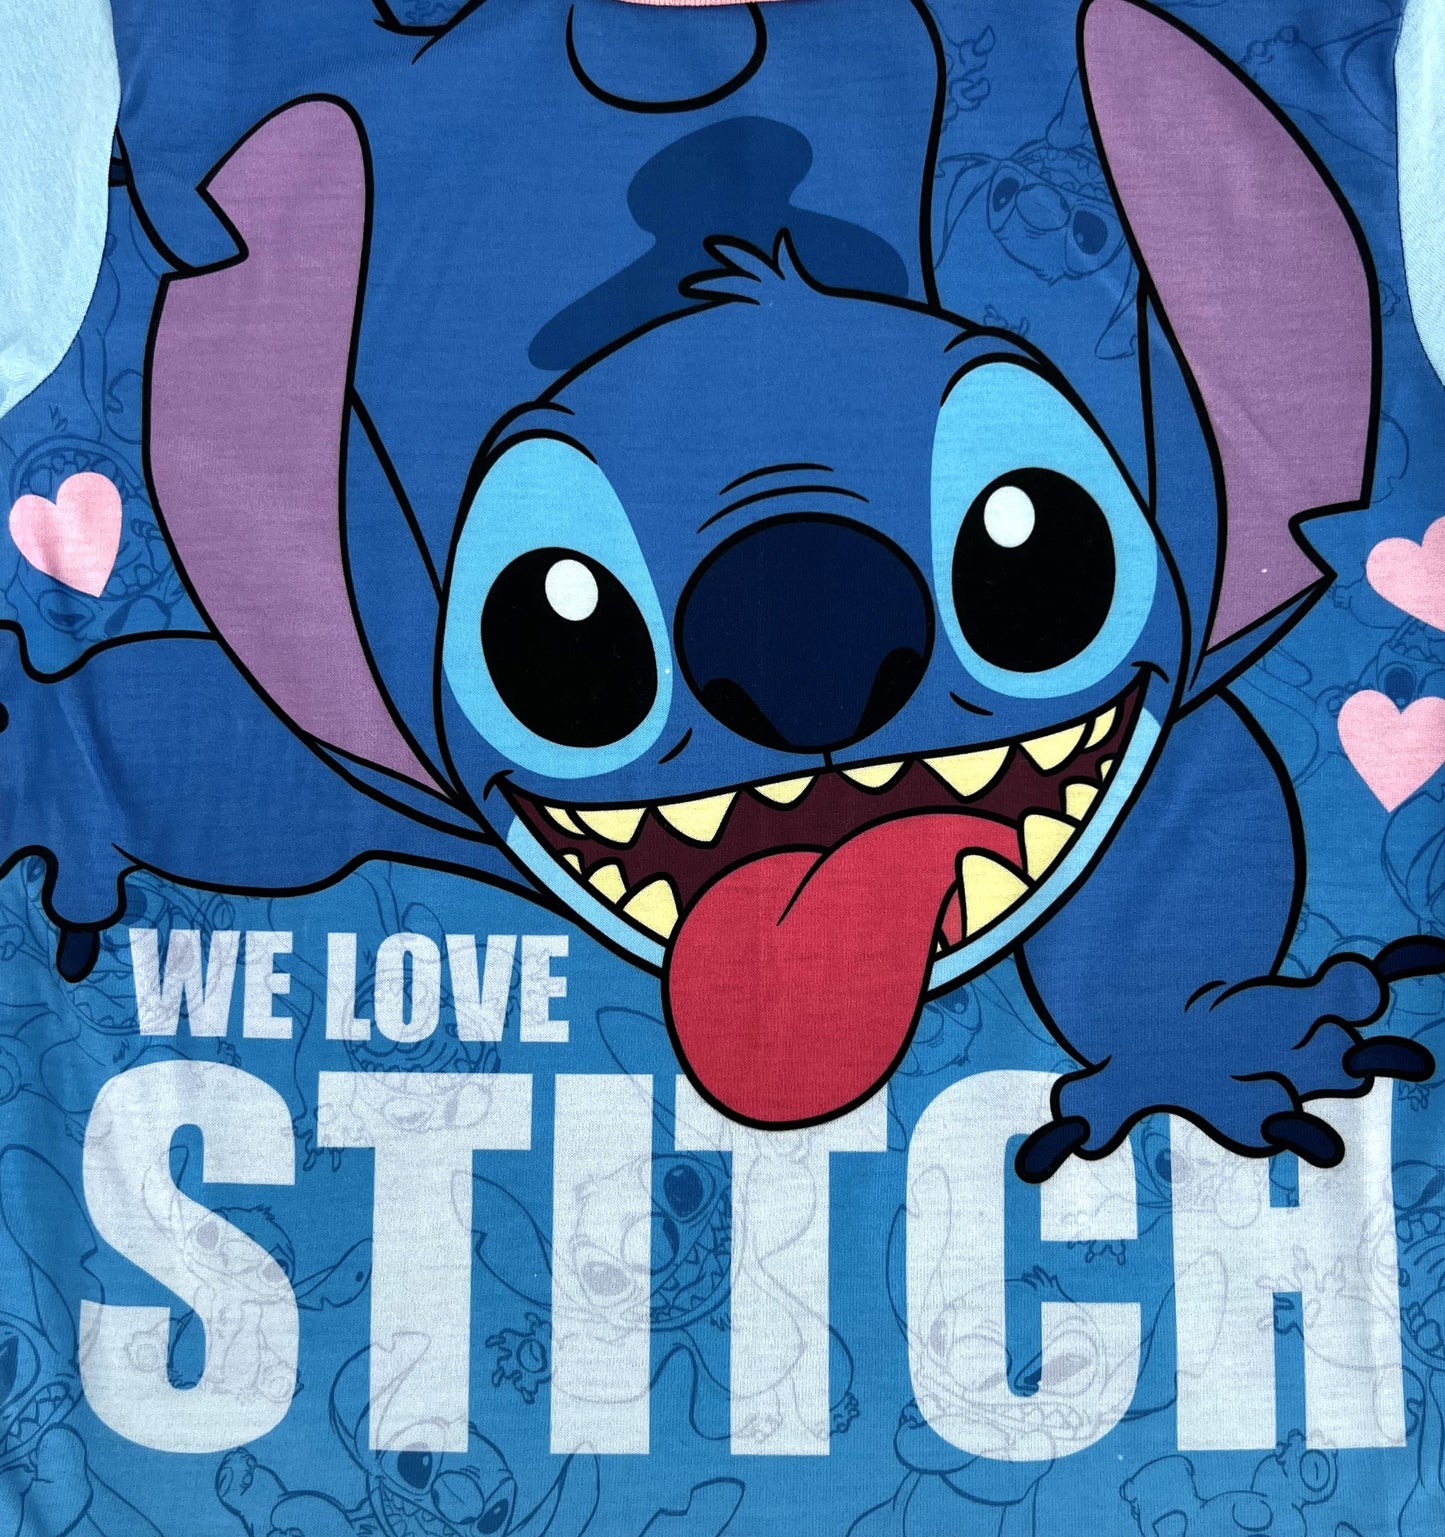 Disney Lilo & Stitch Girl’s Shortie Pyjamas 5-12 Years,